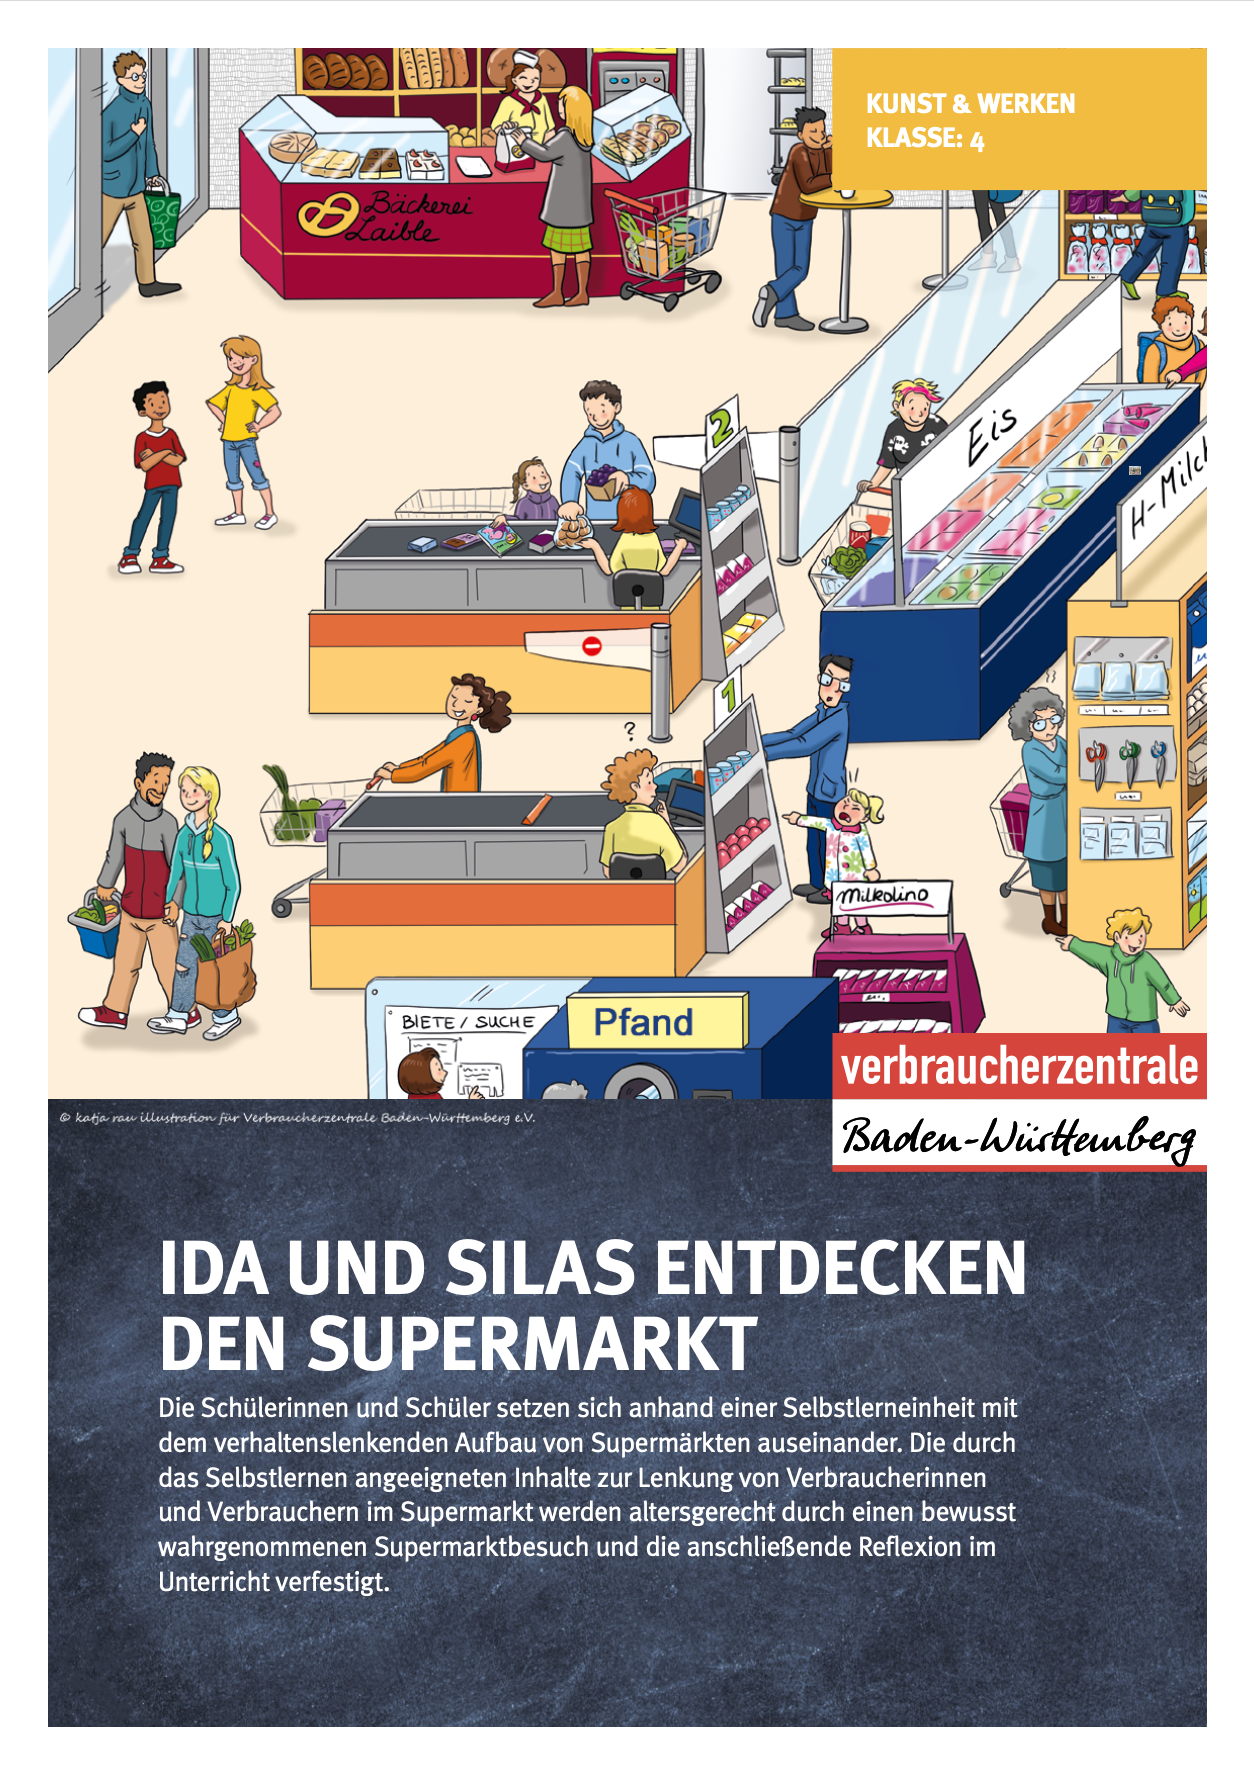 Titelseite des Materials mit Wimmelbild eines Supermarkts